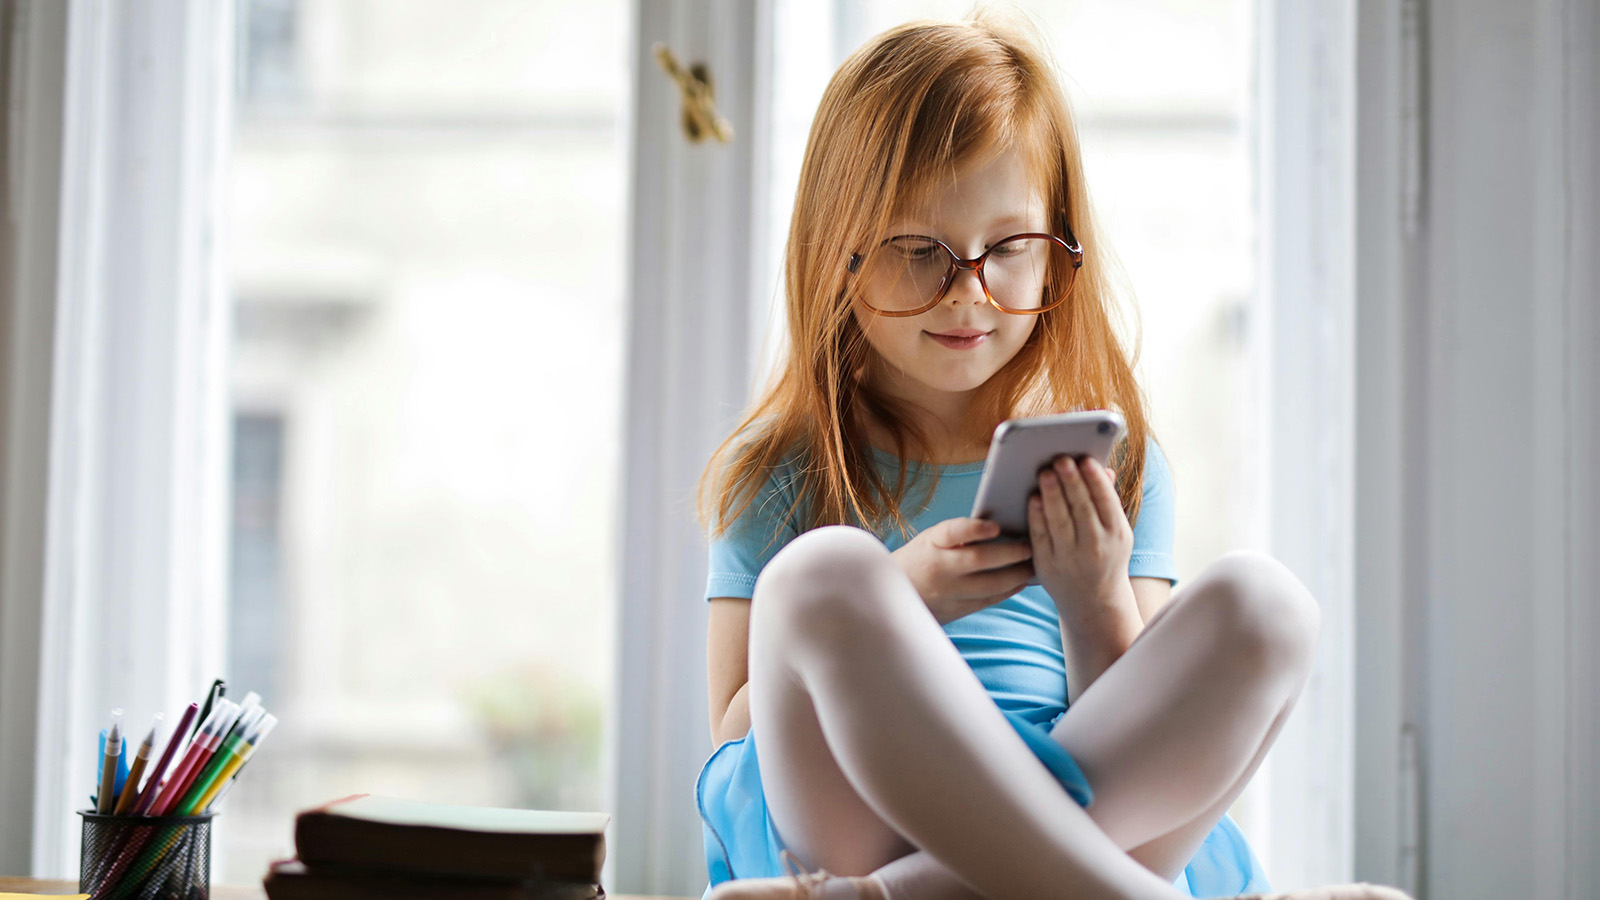 Le gouverneur de Floride signe un projet de loi interdisant aux enfants de moins de 14 ans d'utiliser les réseaux sociaux